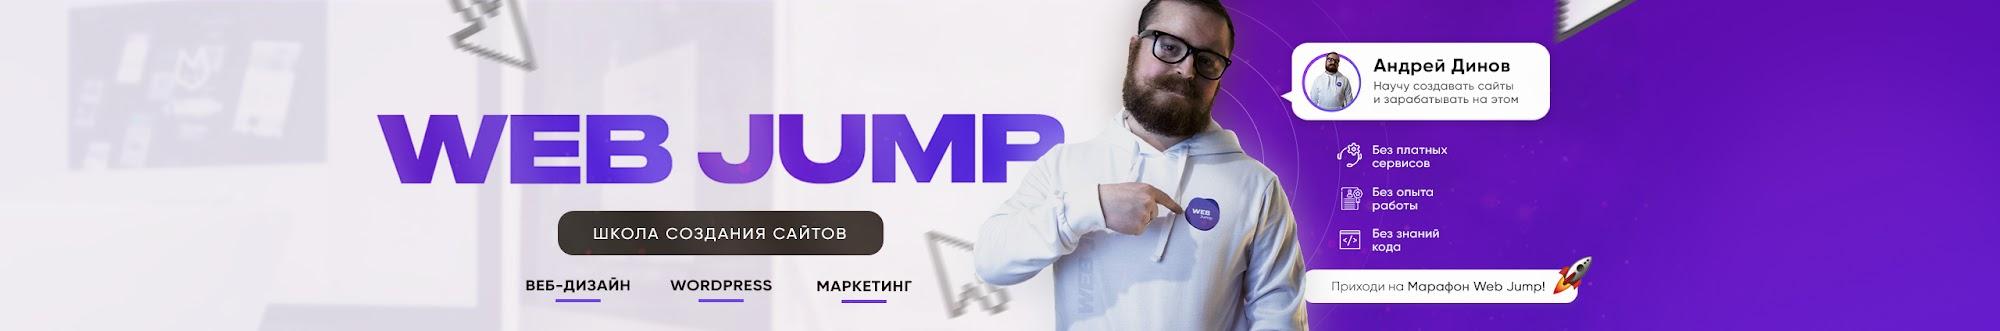 Web Jump | Покажу как создать сайт